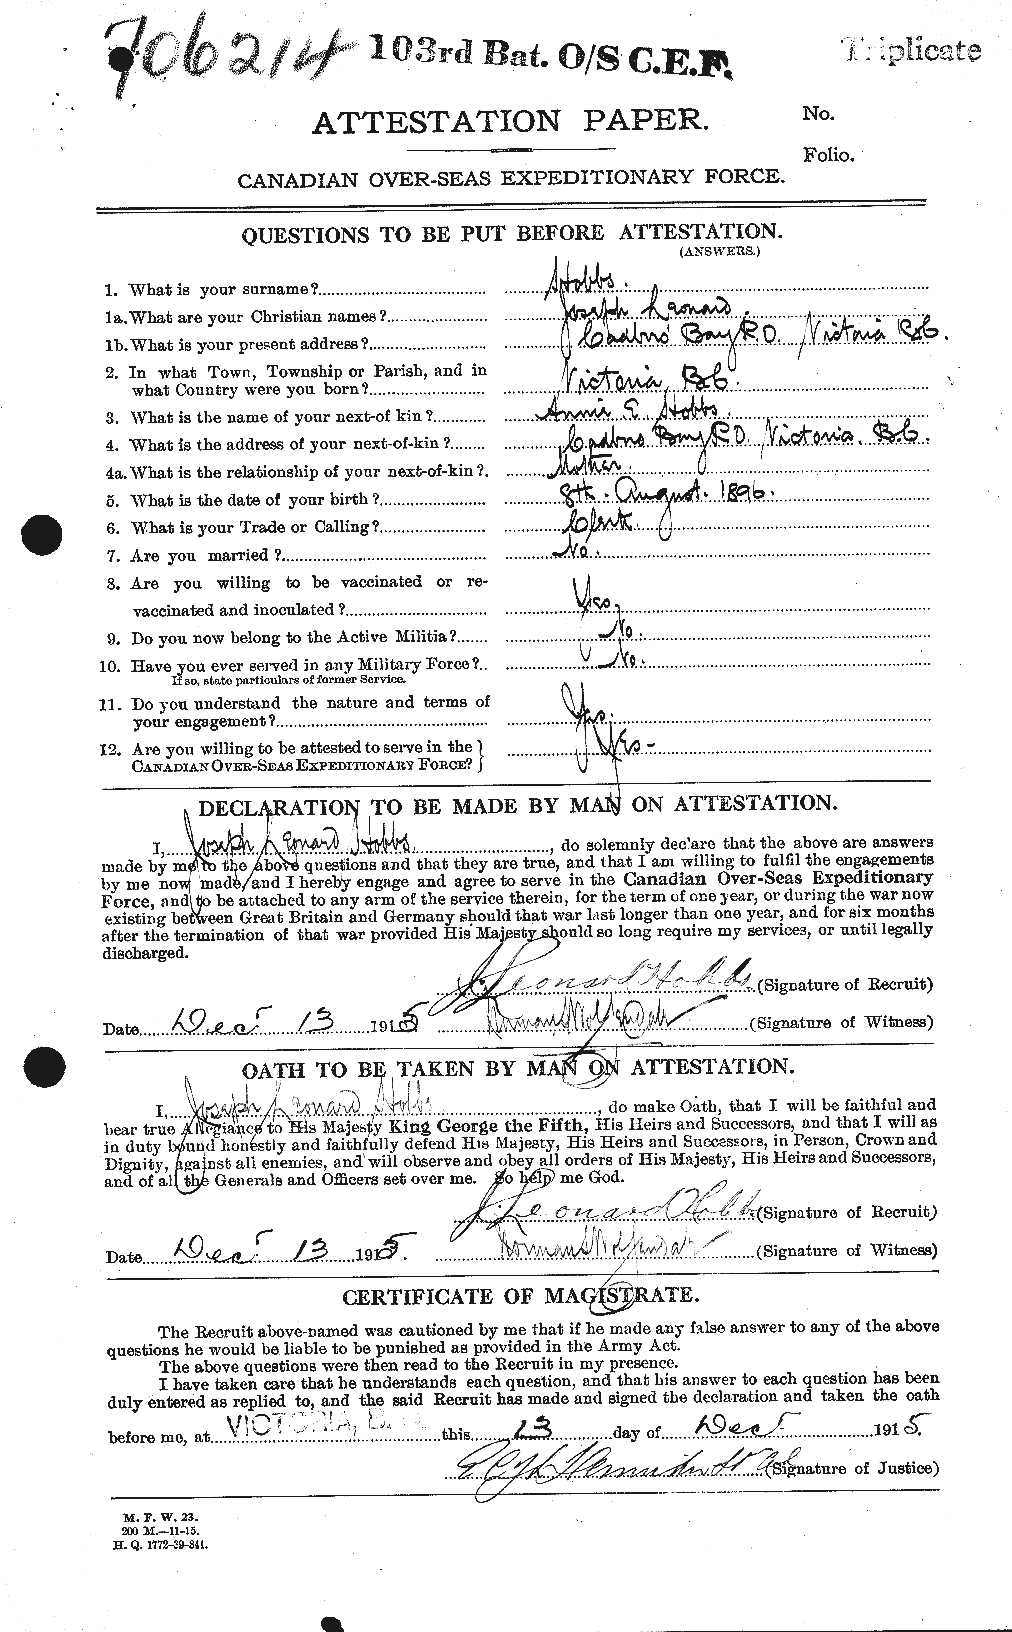 Dossiers du Personnel de la Première Guerre mondiale - CEC 394982a